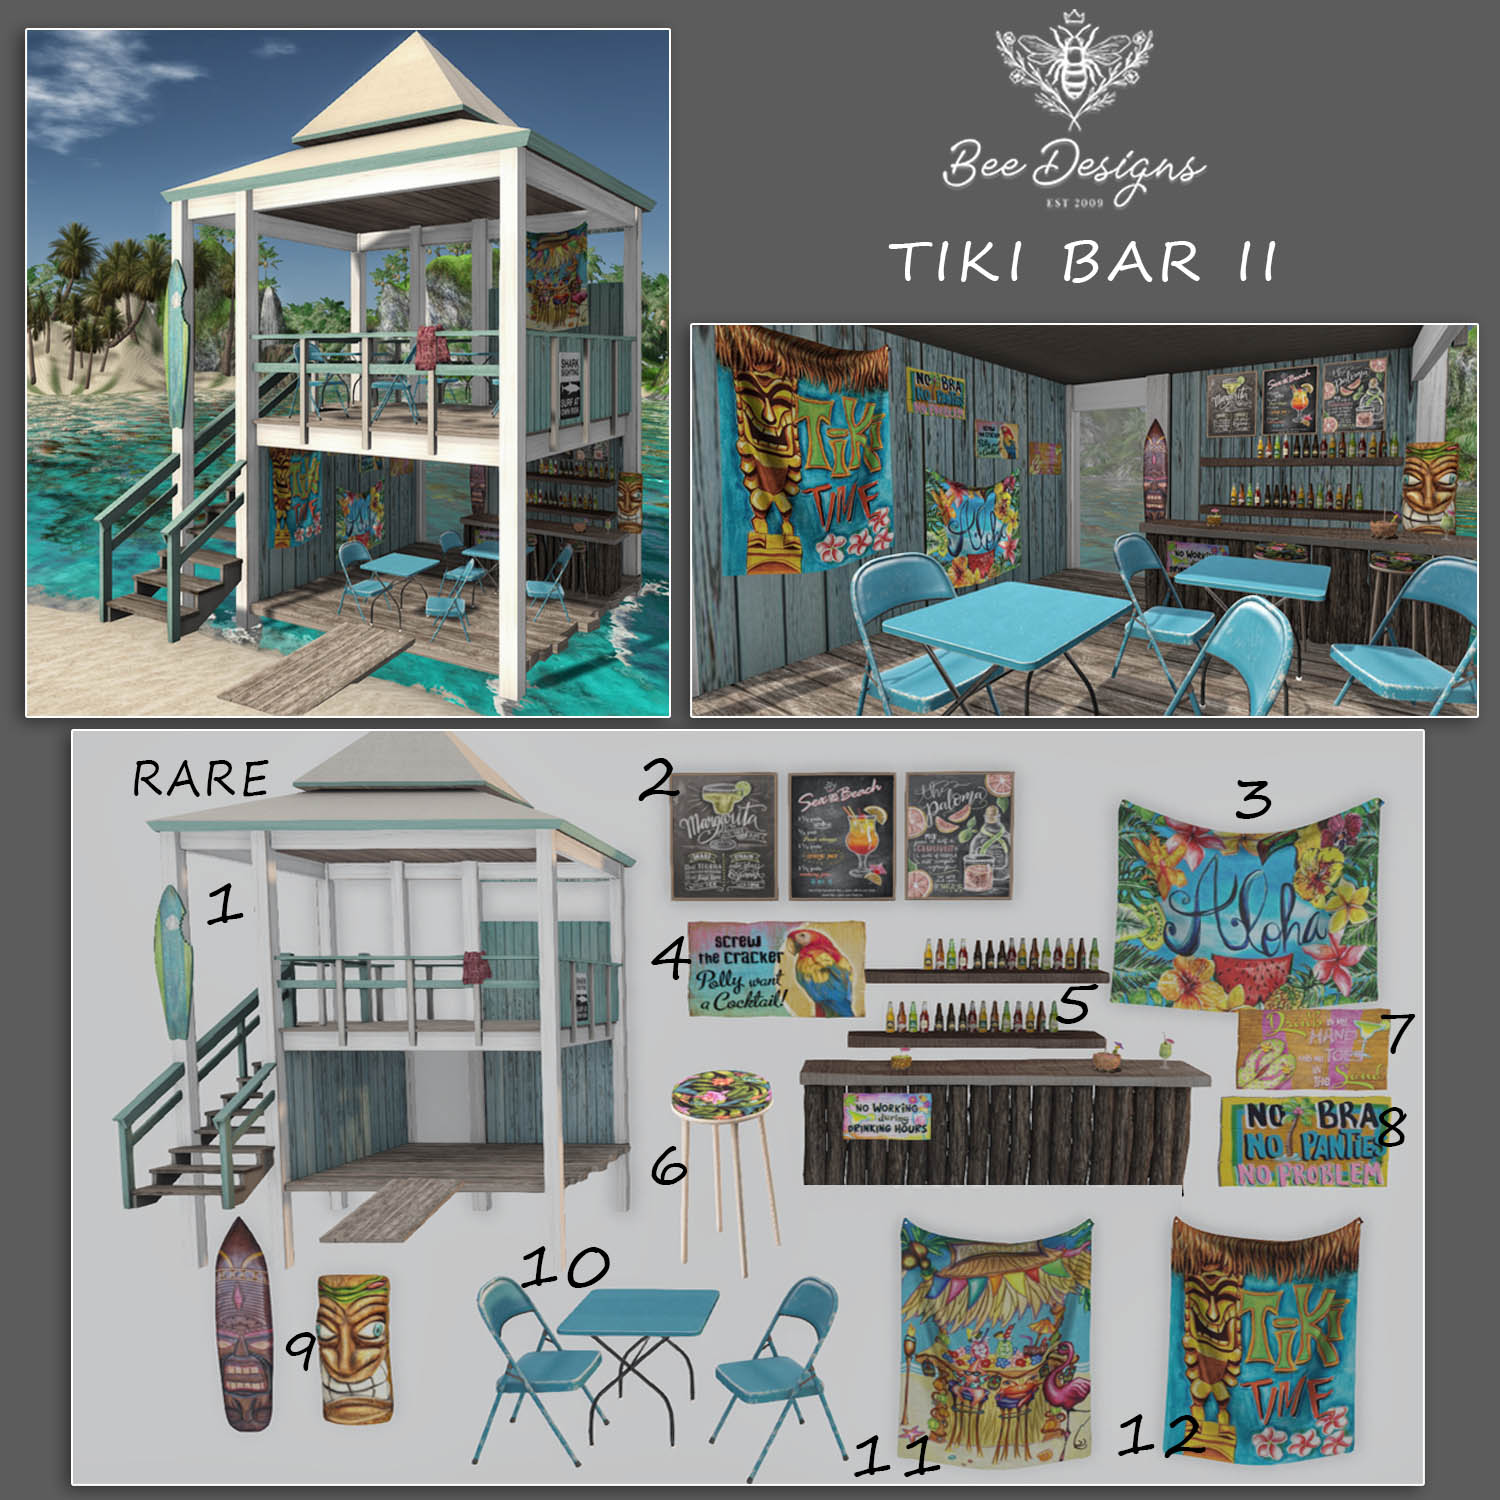 Bee Designs – Tiki Bar II